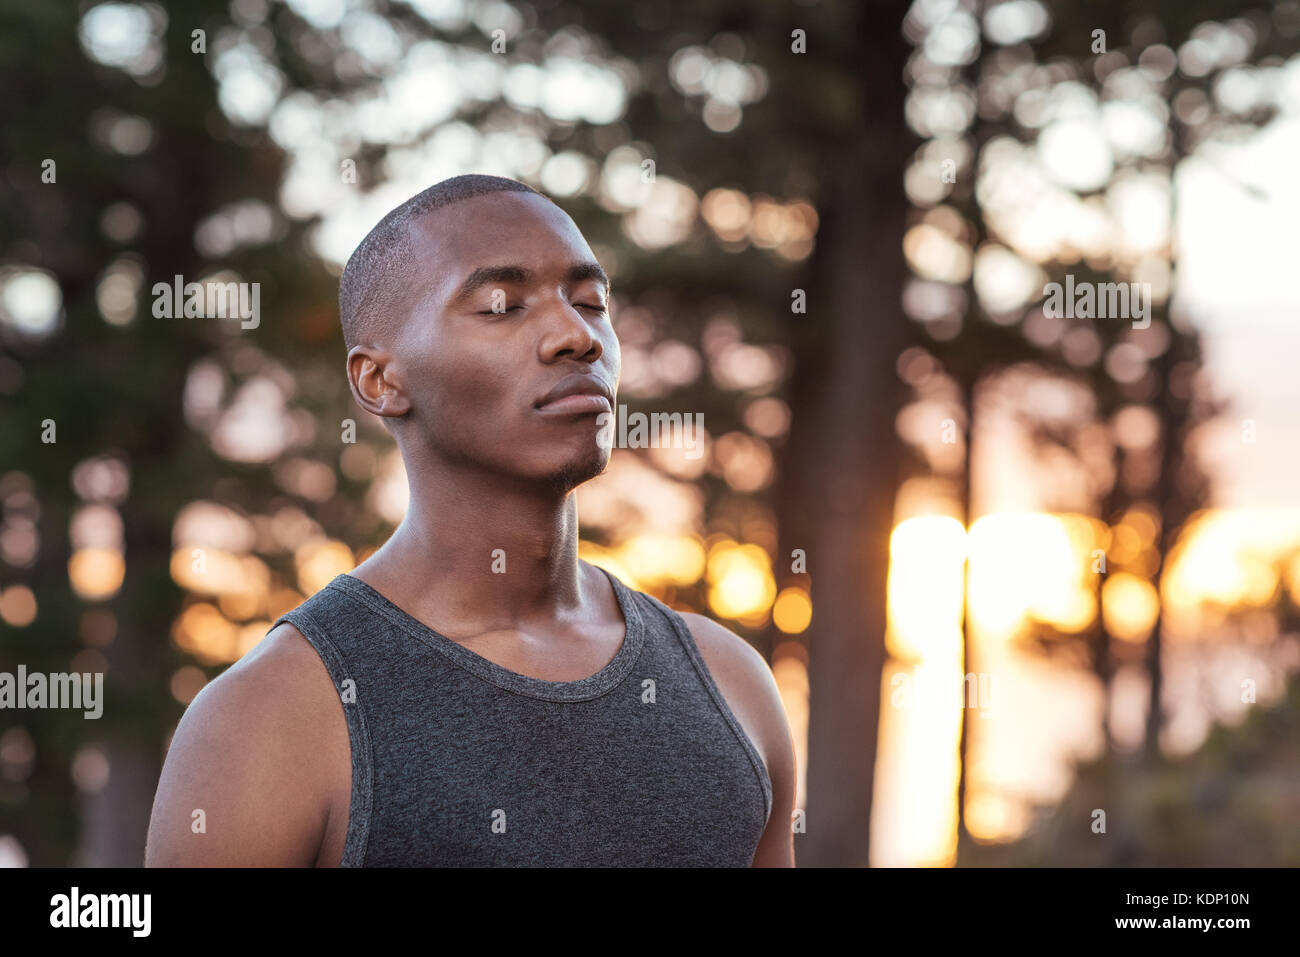 Junge afrikanische Mann für einen Cross Country Lauf konzentriert Stockfoto